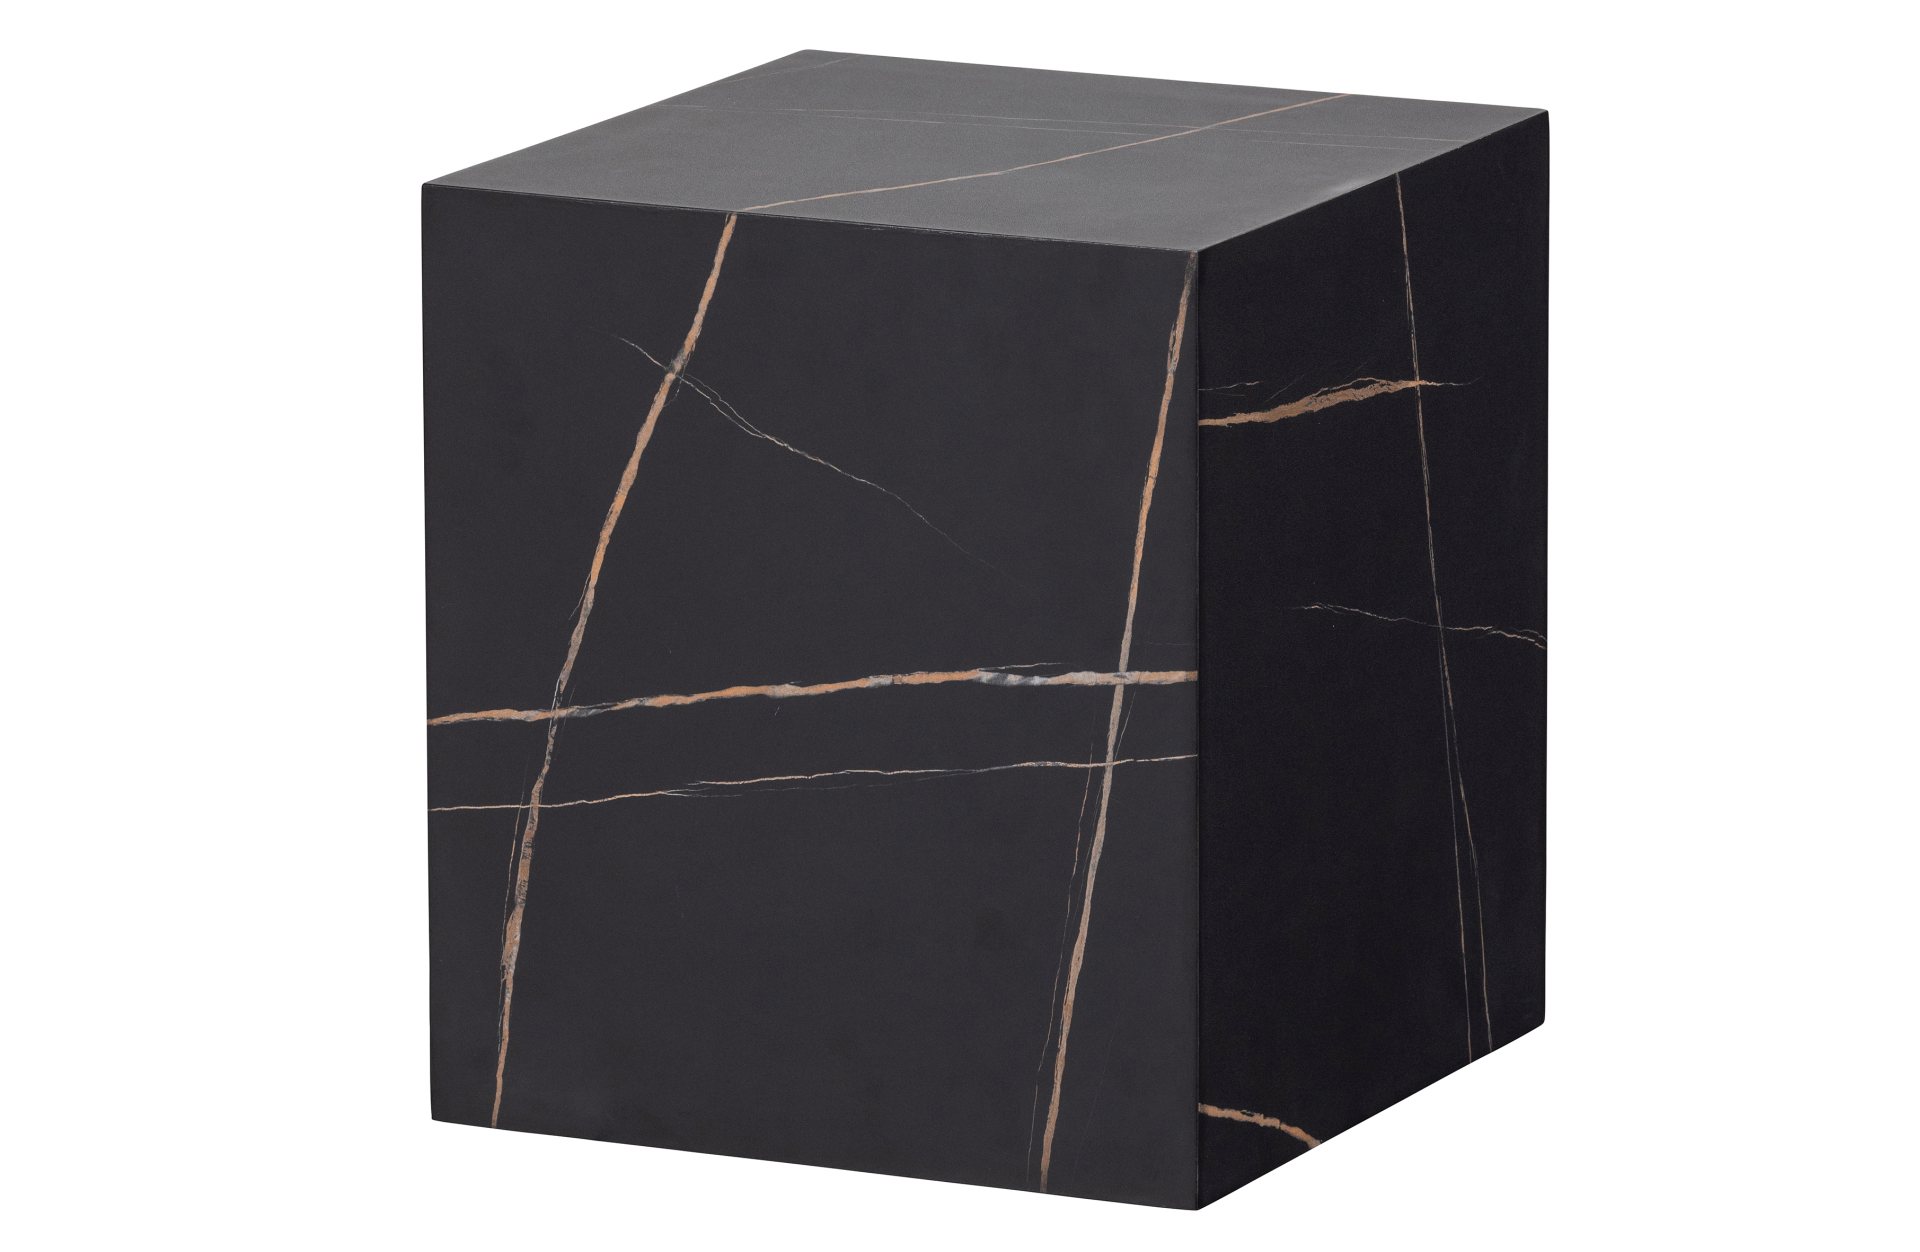 Der Beistelltisch Benji wurde aus MDF Holz gefertigt und besitzt eine Marmoroptik. Seine quadratisch Form unterstreicht das schlichte Design des Tisches.